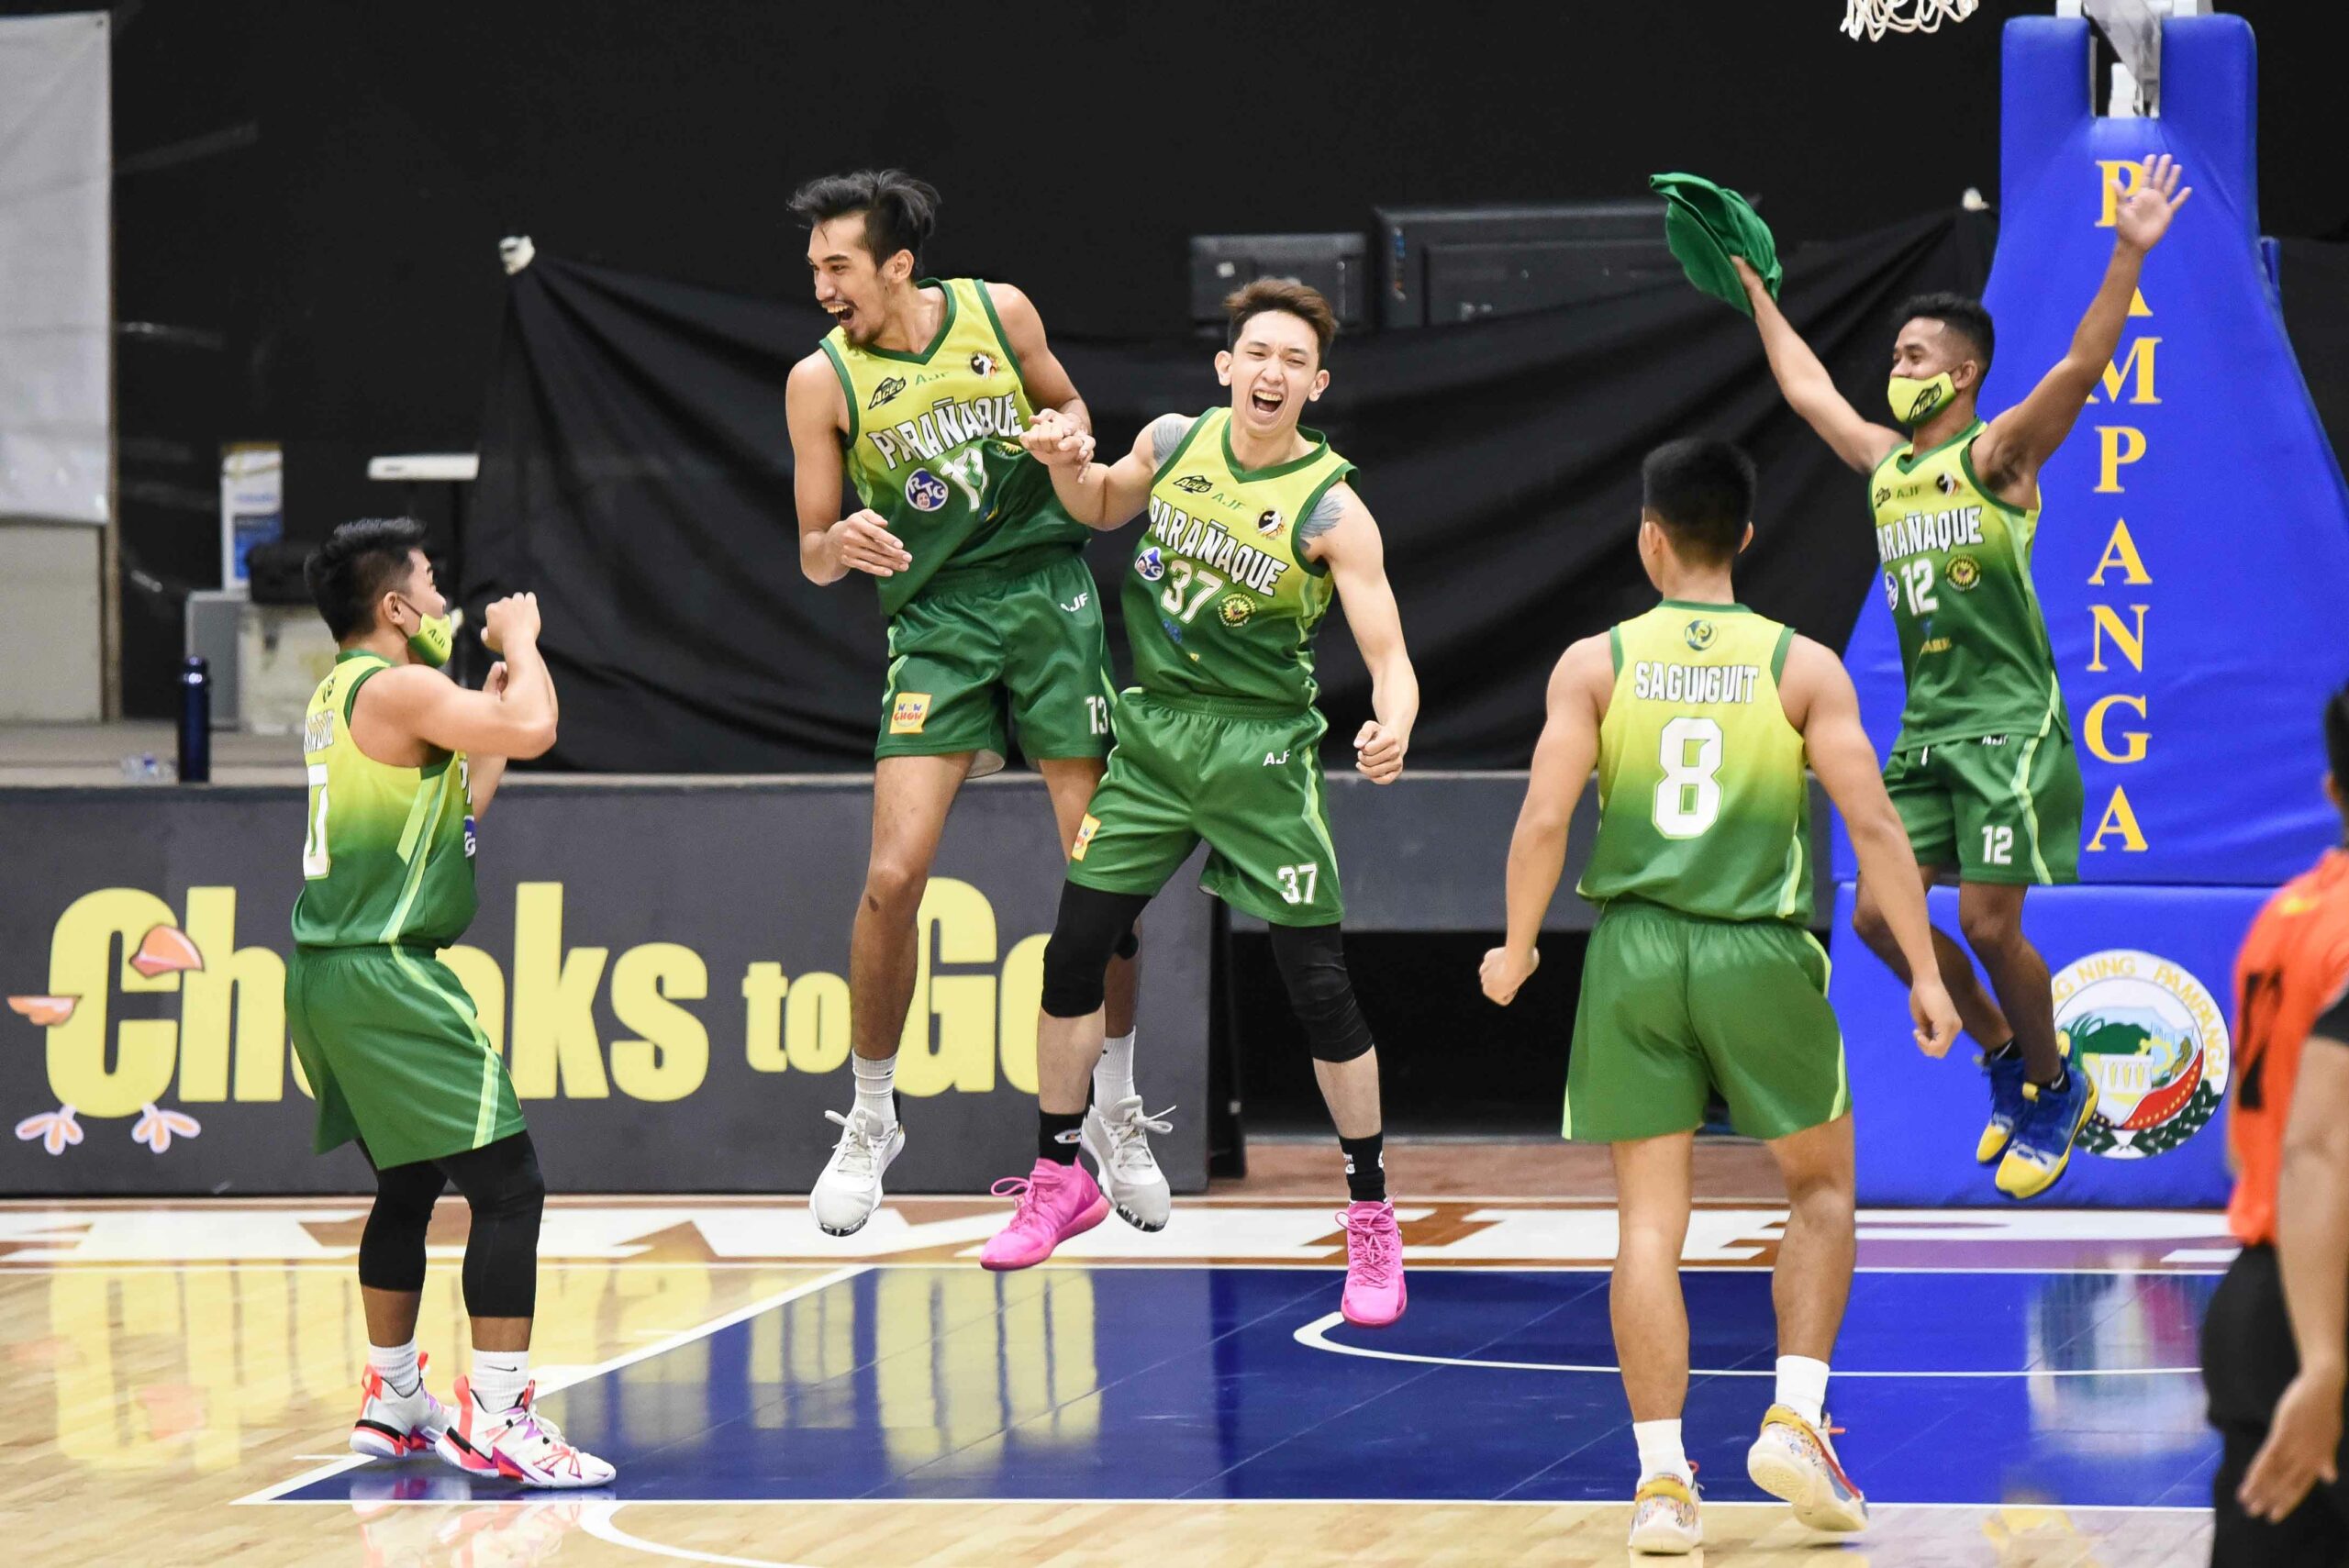 2021-Chooks-to-Go-NBL-Quezon-vs-Paranaque-Aces-celebration-scaled Vince Alves the hero as Parañaque sinks Quezon, keeps NBL playoff dreams alive Basketball NBL News  - philippine sports news